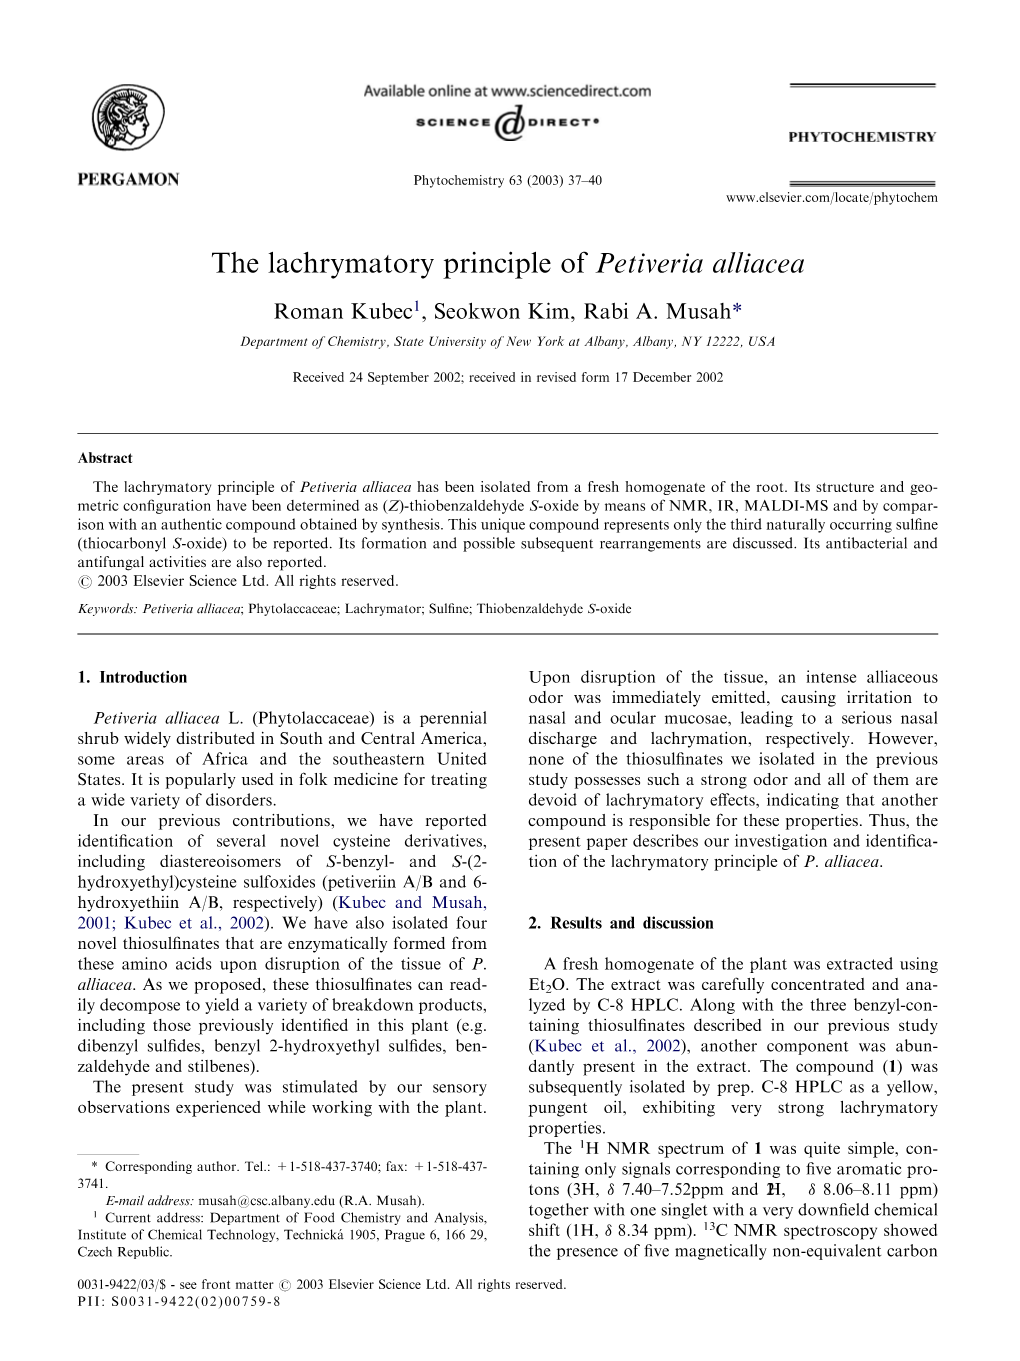 The Lachrymatory Principle of Petiveria Alliacea